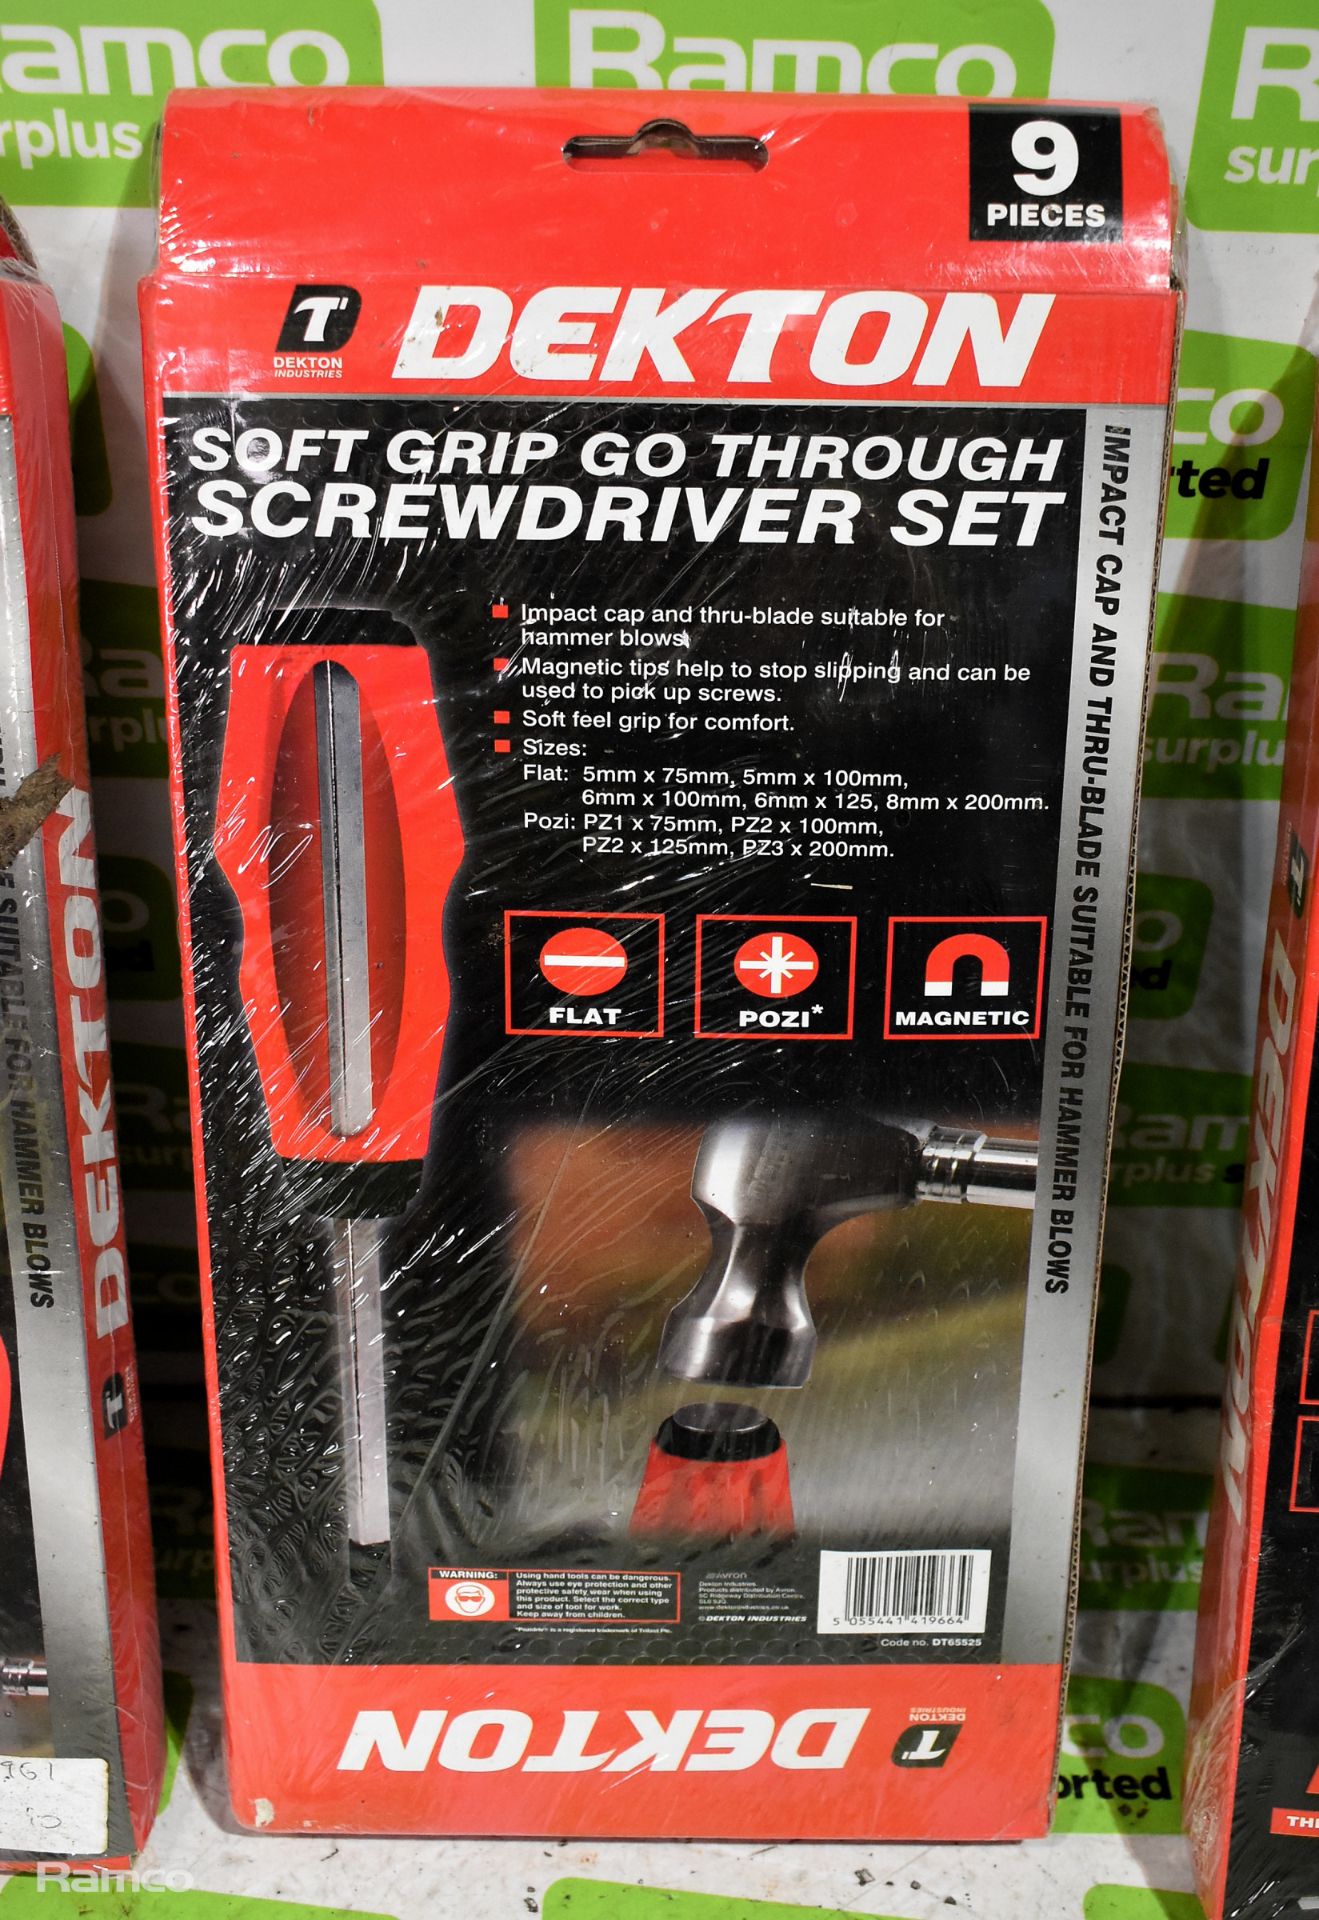 3x Dekton 9 piece Soft grip go through screwdriver sets - Image 3 of 3